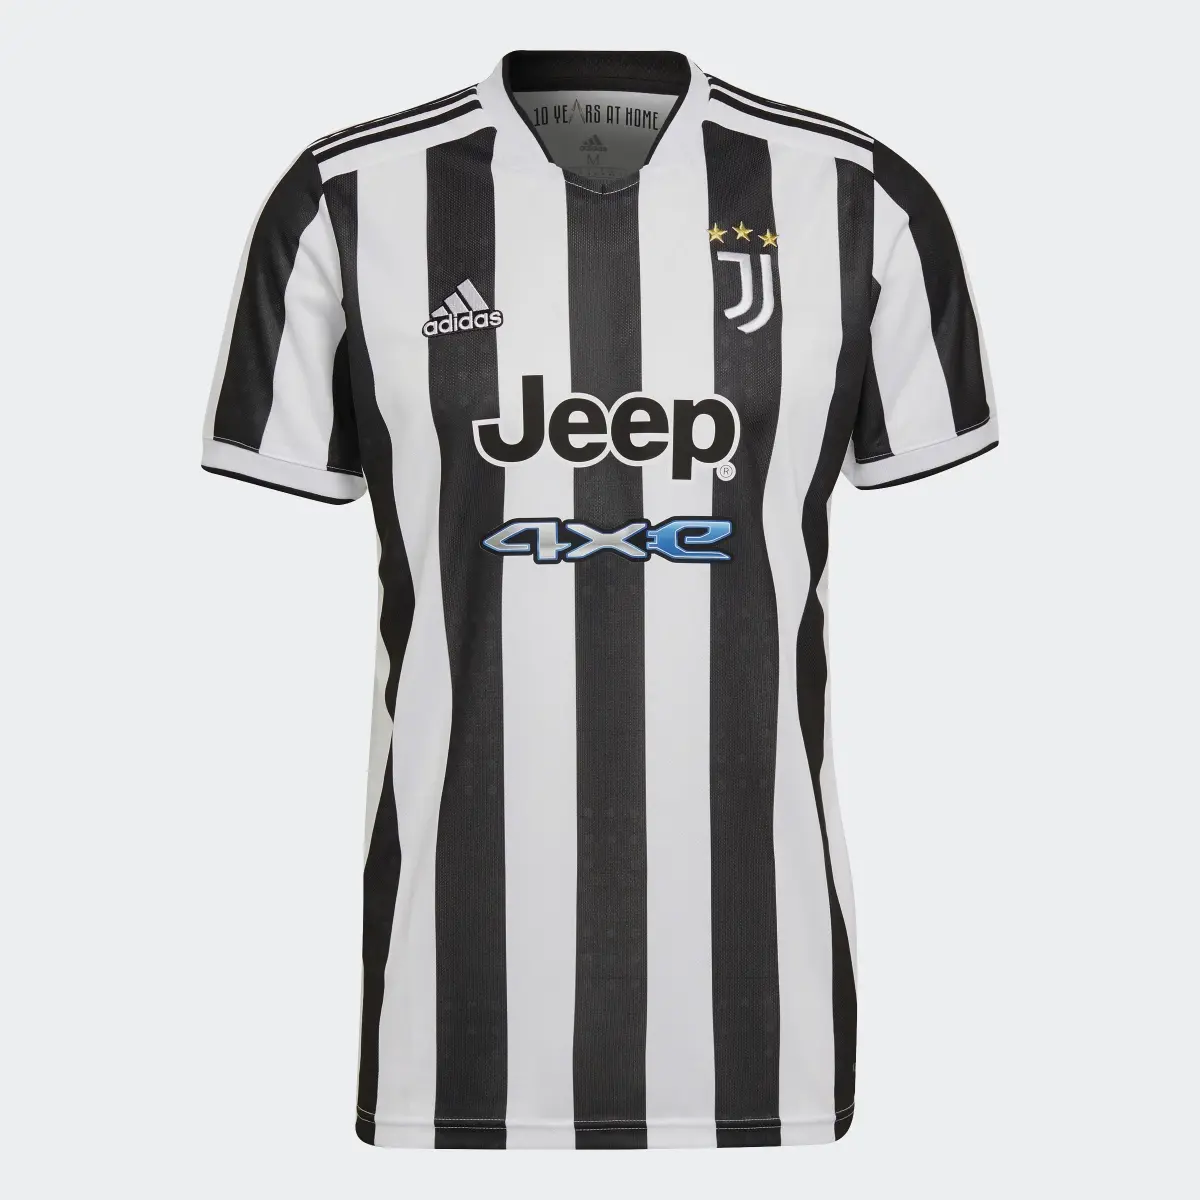 Adidas Juventus 21/22 Home Jersey. 1